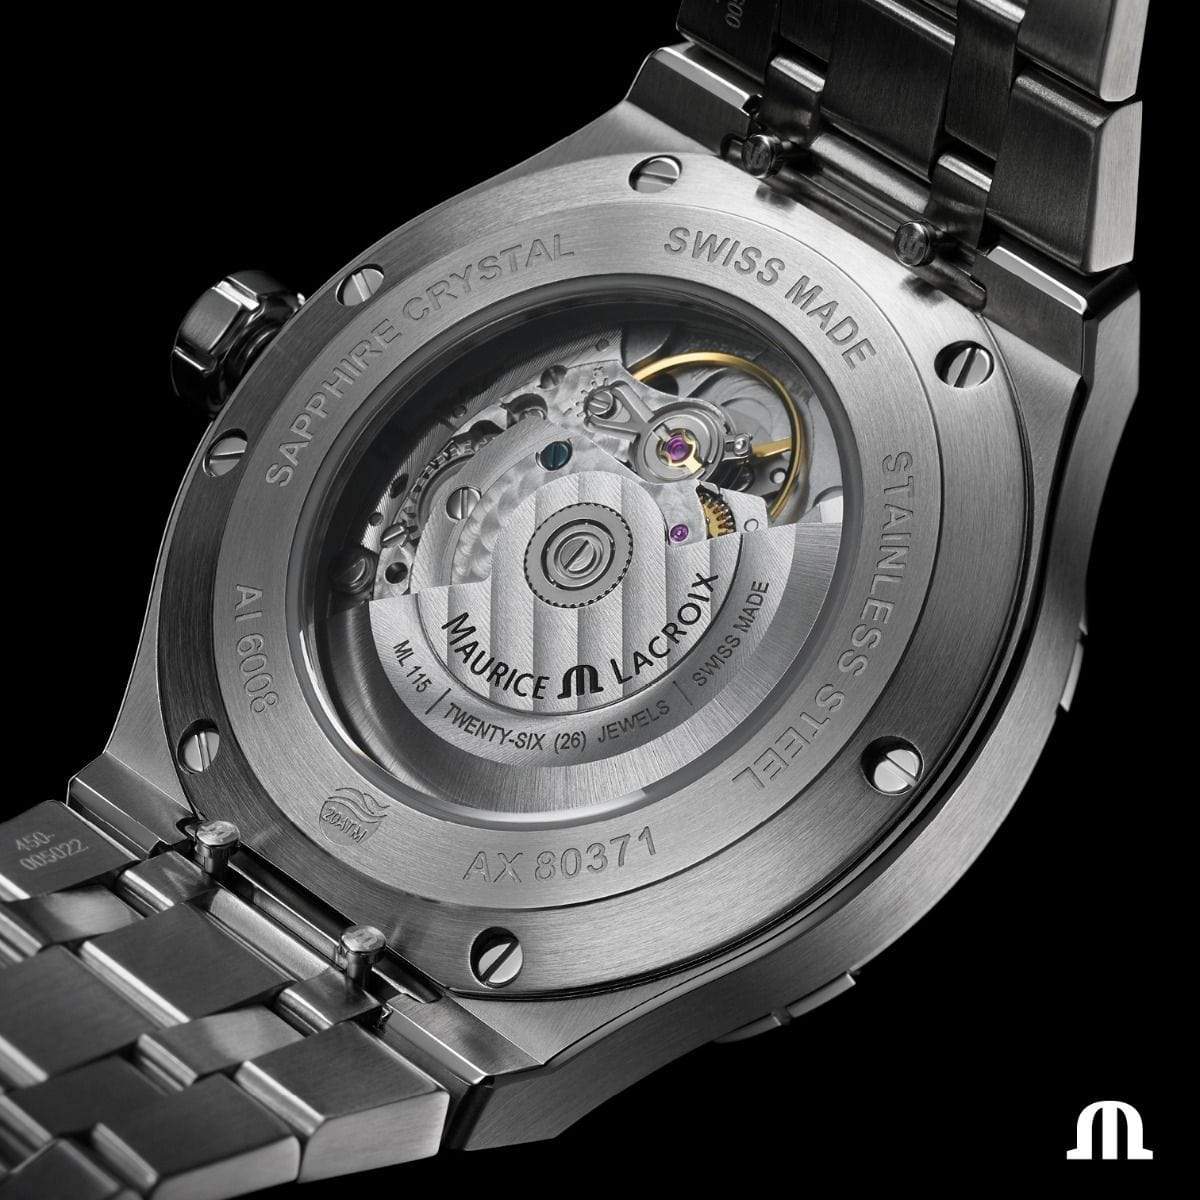 Maurice Lacroix AIKON Automatic 42mm Blue Dial Men\'s Watch AI6008-SS00 –  Time Machine Plus